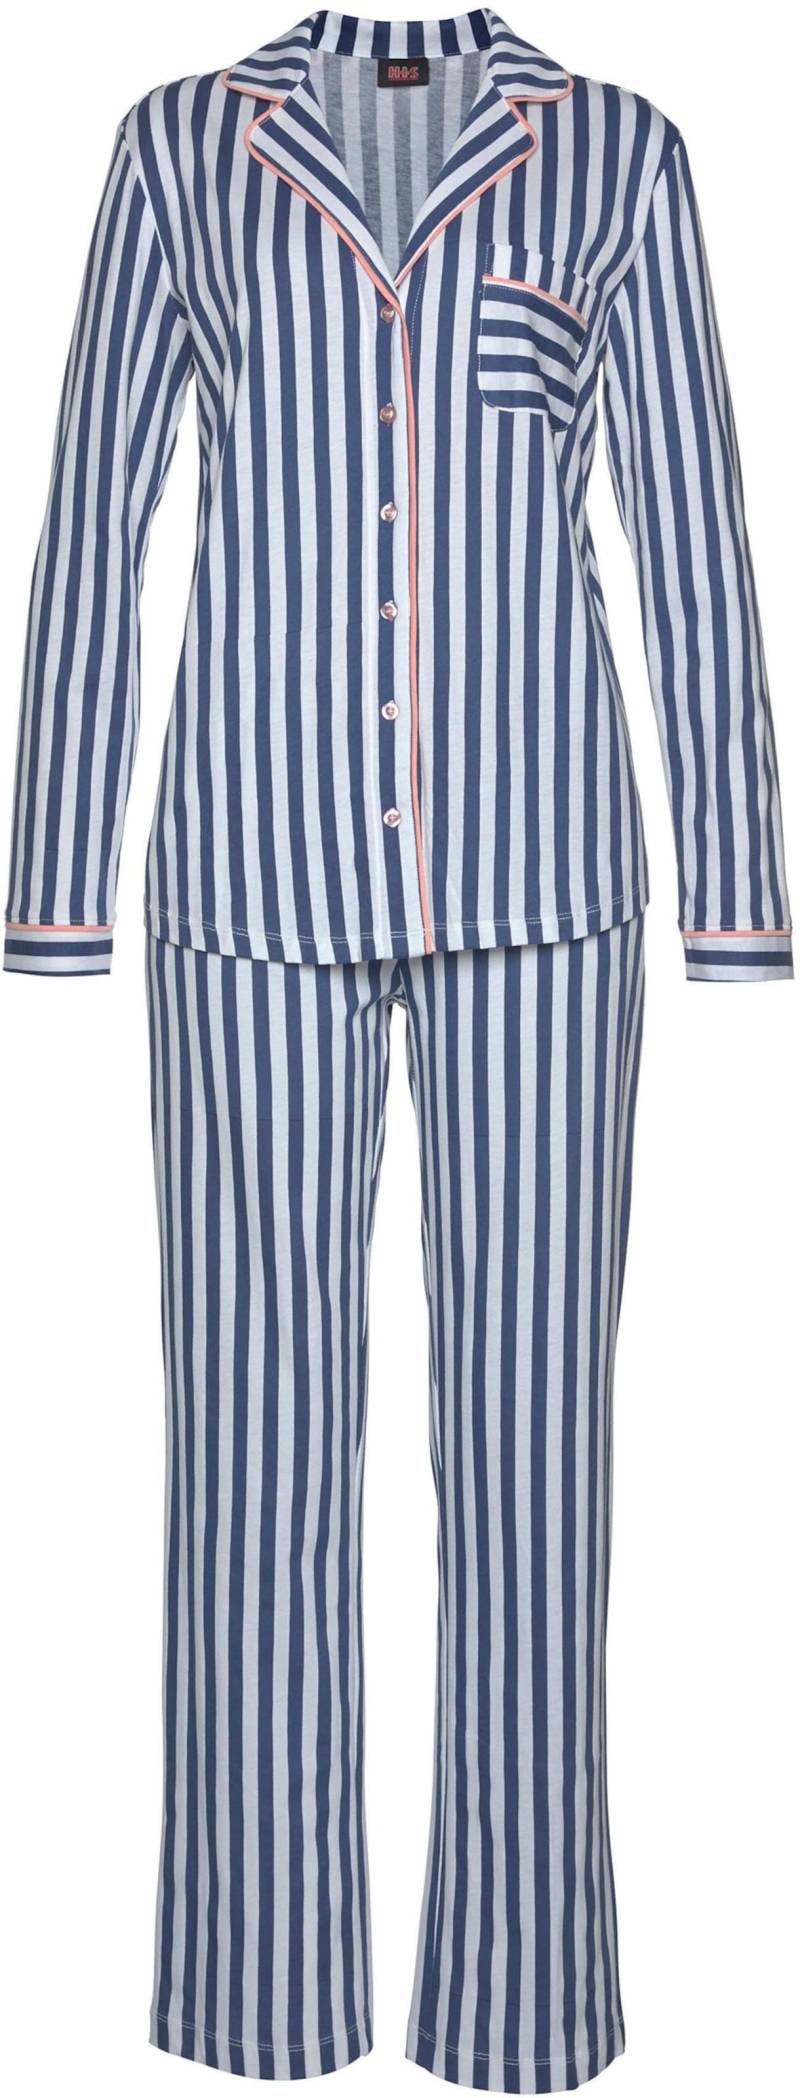 Pyjama in dunkelblau-weiss-gestreift von H.I.S